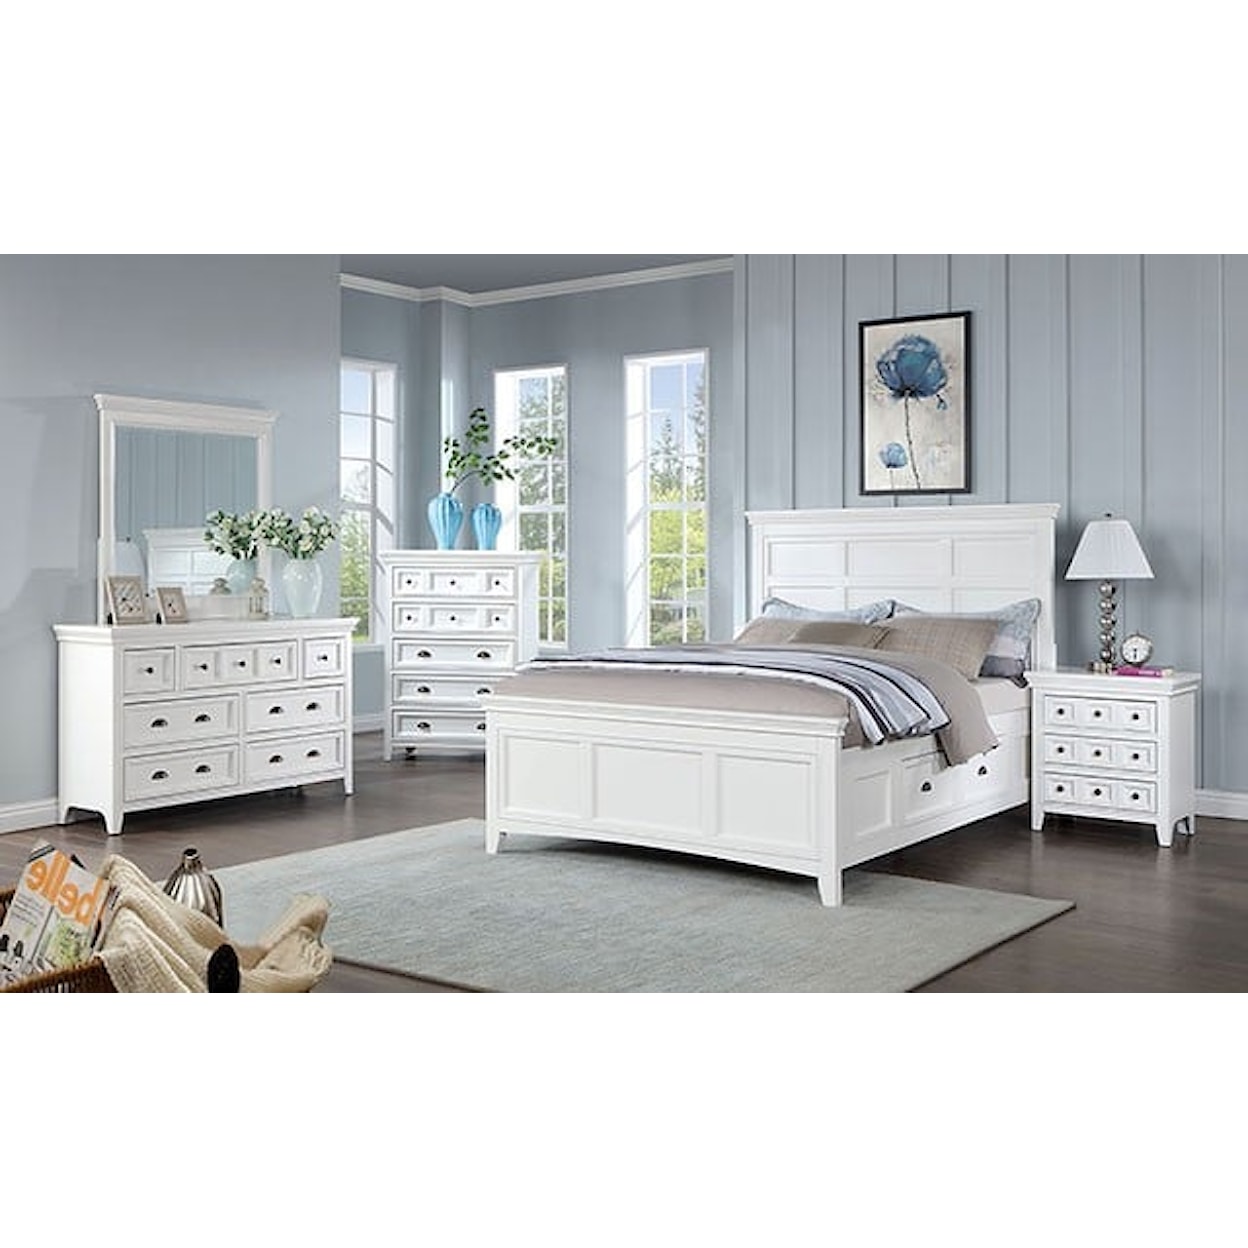 Furniture of America CASTILE 5-Piece Queen Bedroom Set